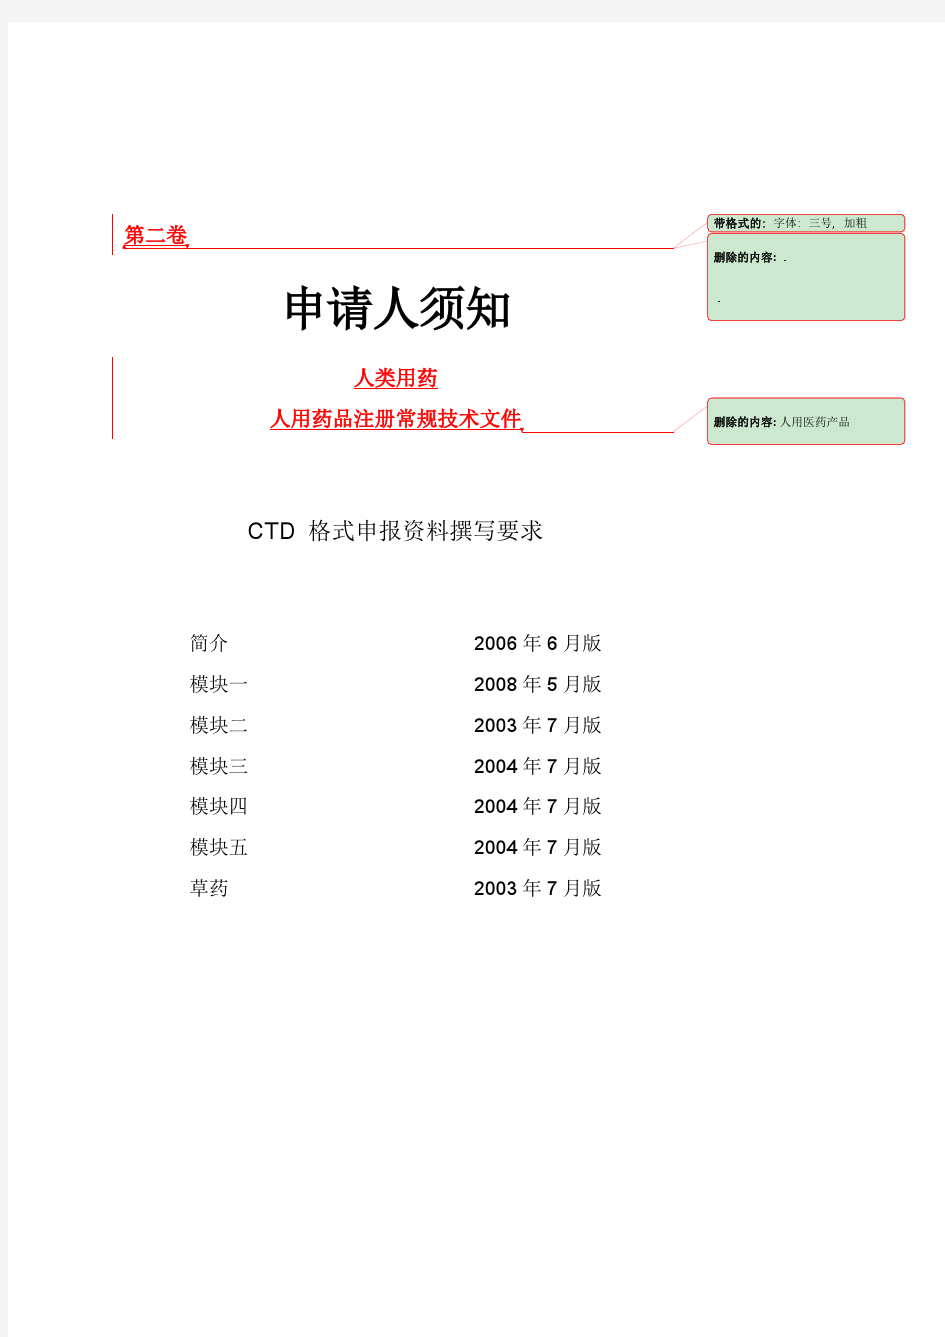 CTD人用药品注册常规技术文件汇总 全部版中文